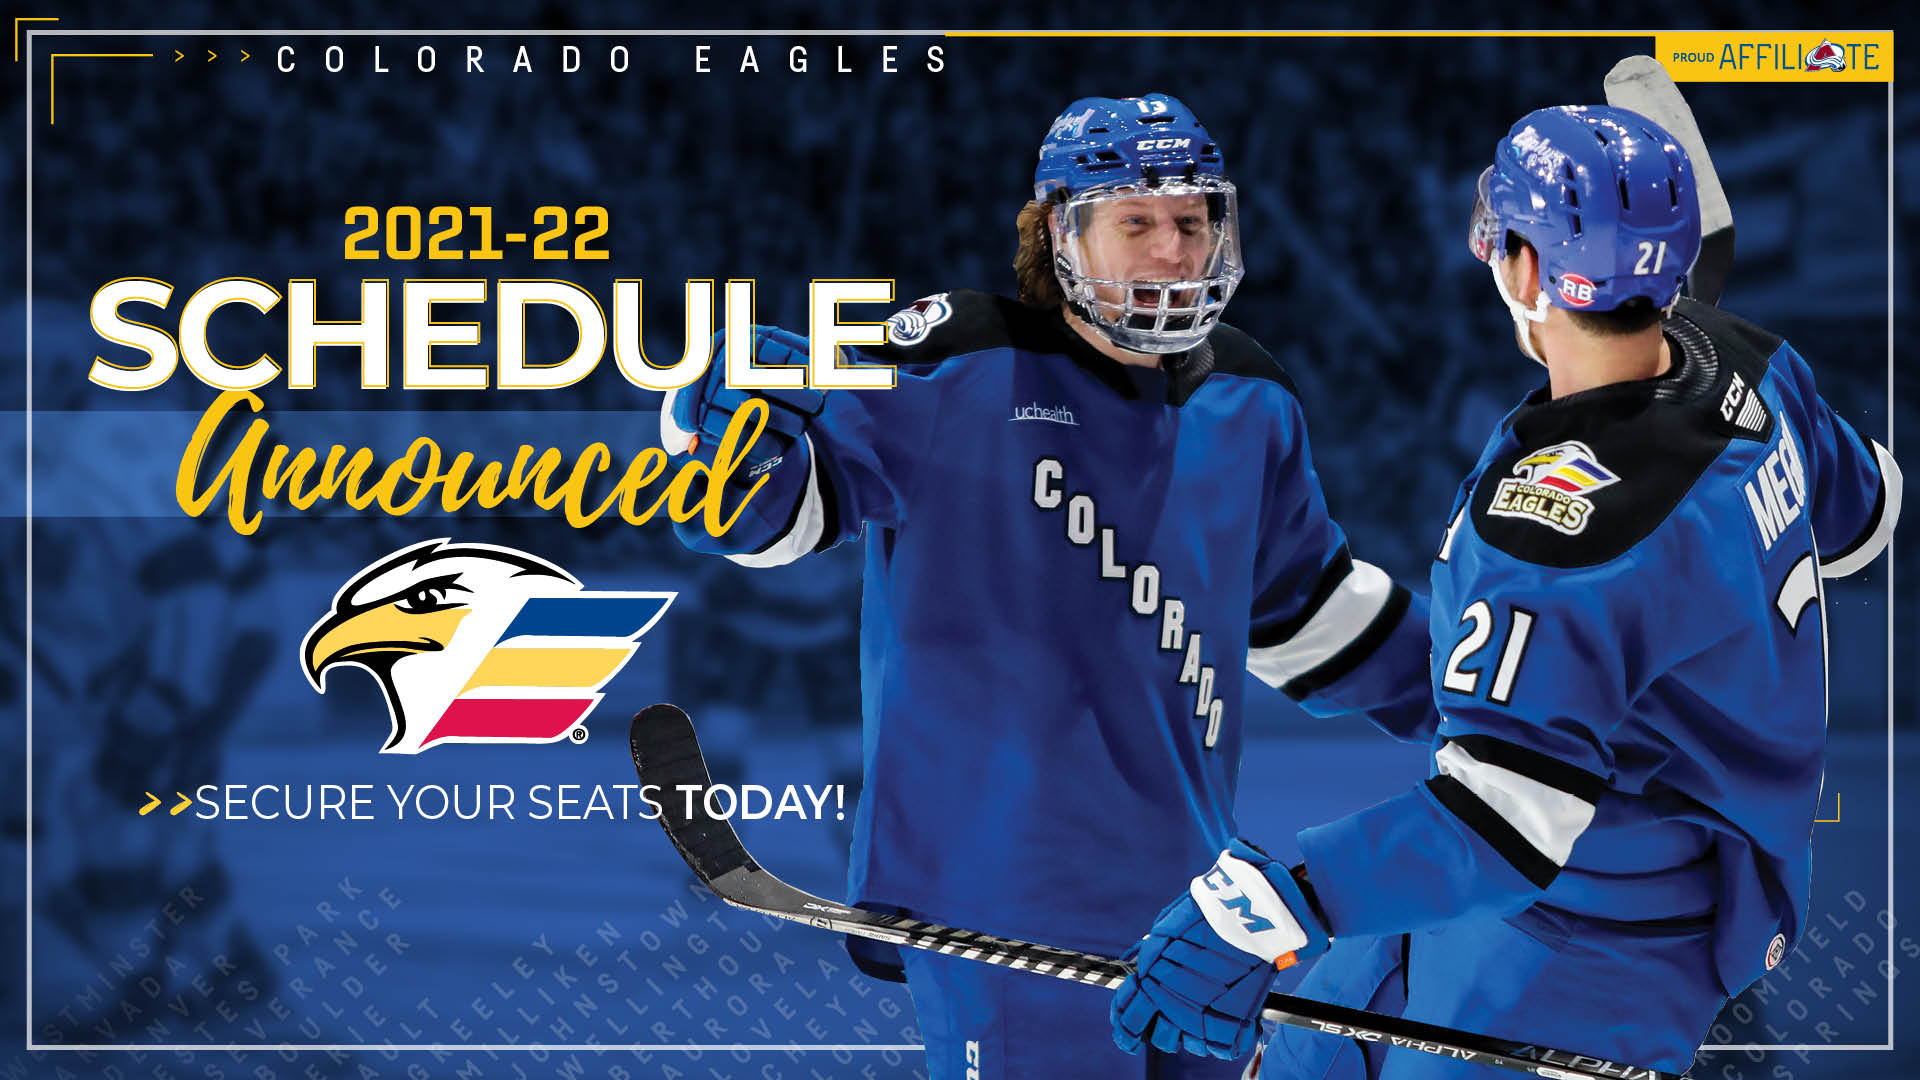 Colorado Eagles update new 'Colorado Sky' uniforms - Colorado Hockey Now